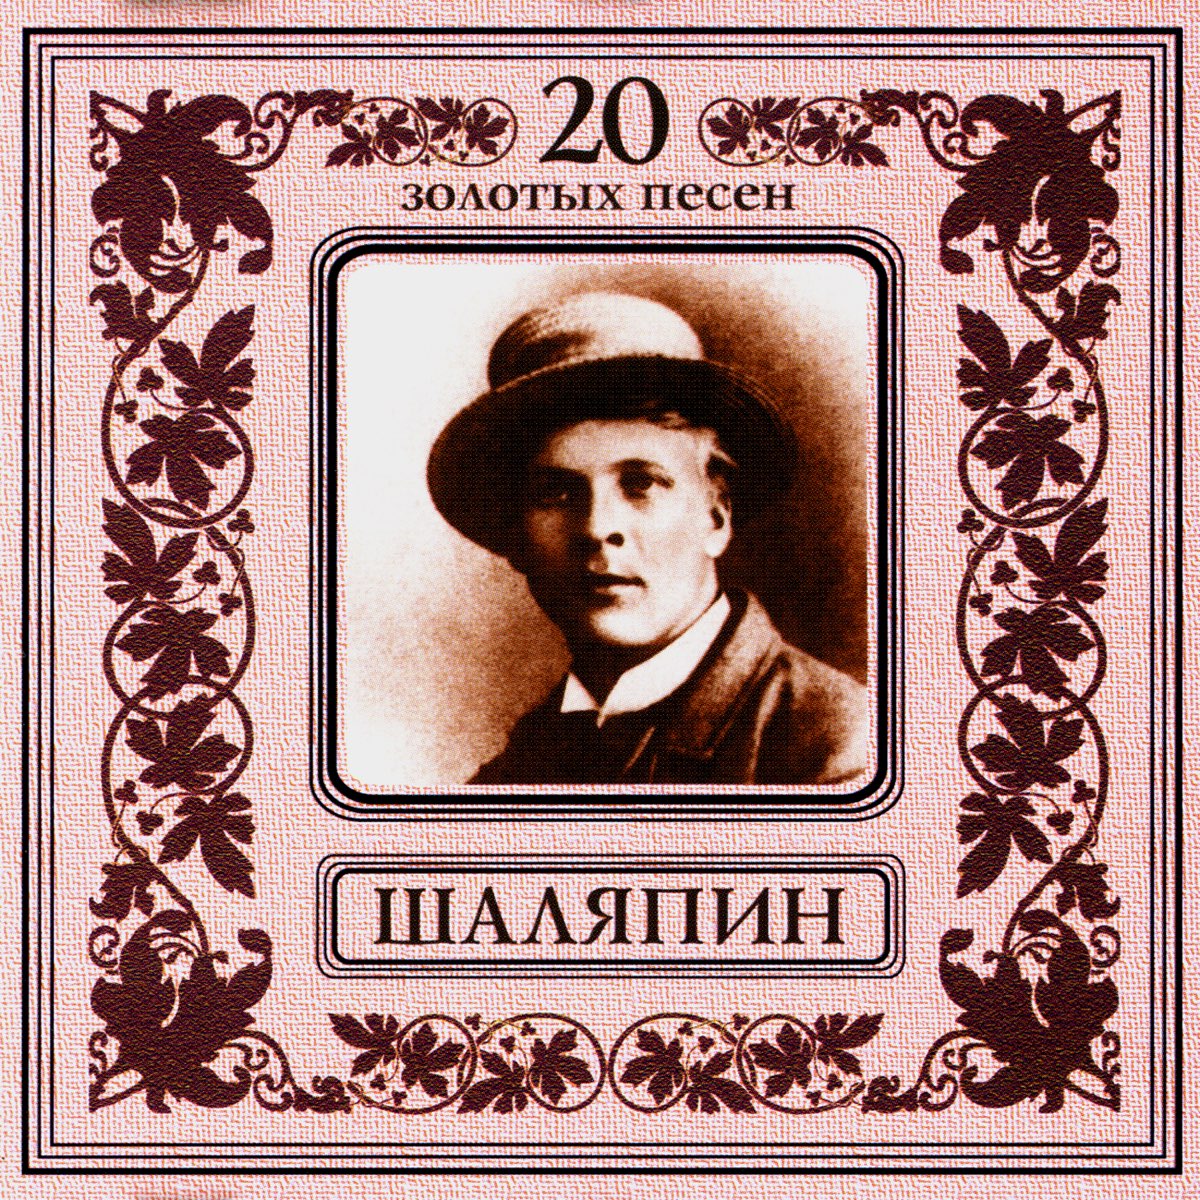 Федора Ивановича Шаляпина. Фёдор Шаляпин 1929. Шаляпин оперный певец.